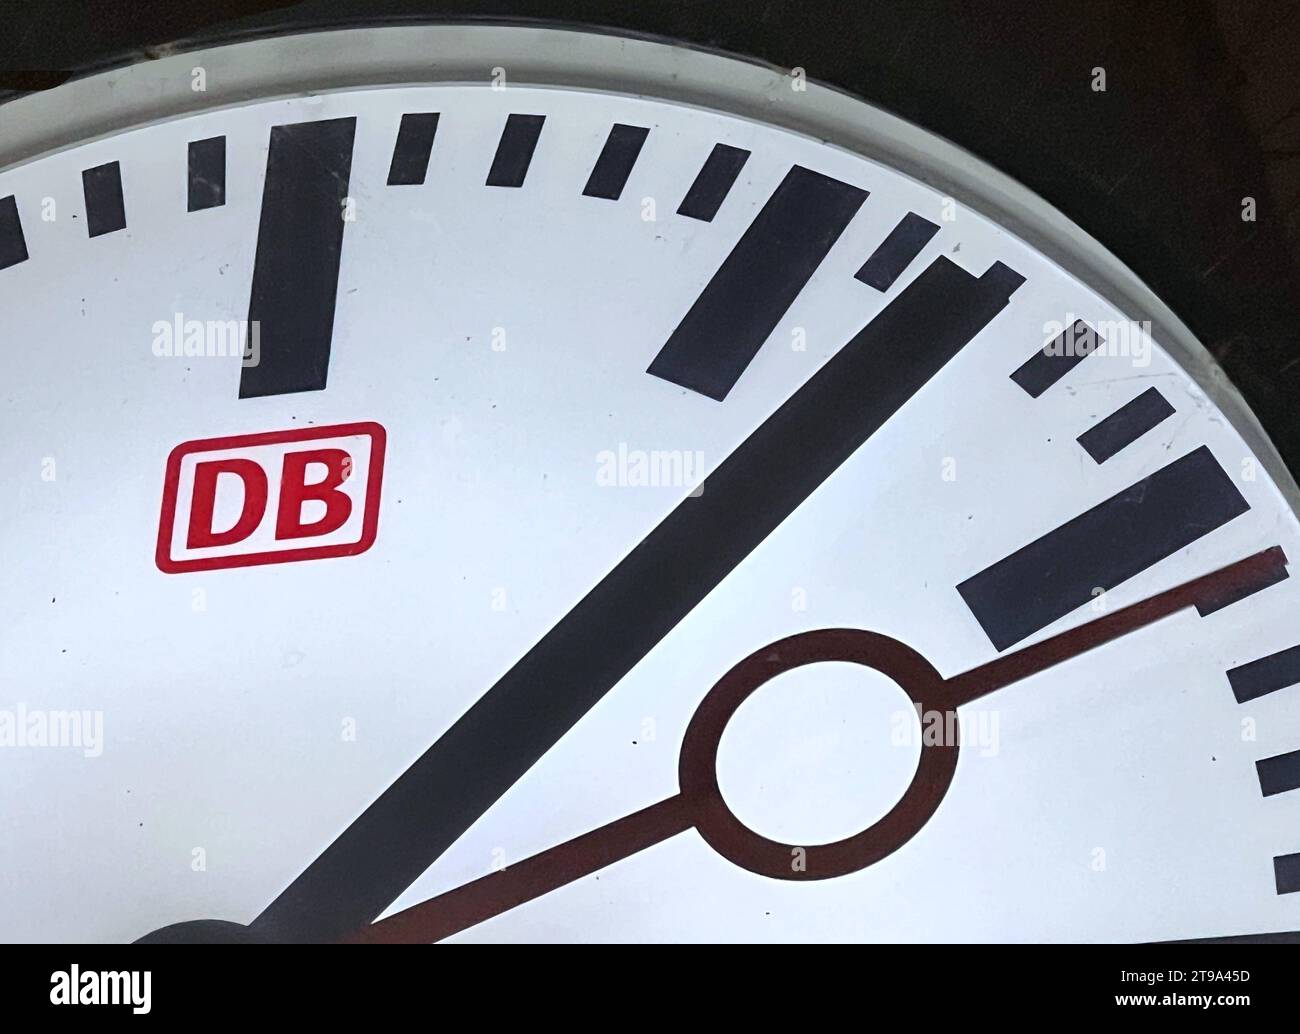 Bahnhofsuhr Uhrzeit Deutsche Bahn Uhrzeiger *** heure de l'horloge Deutsche Bahn horloge main Copyright : xmix1x crédit : Imago/Alamy Live News Banque D'Images